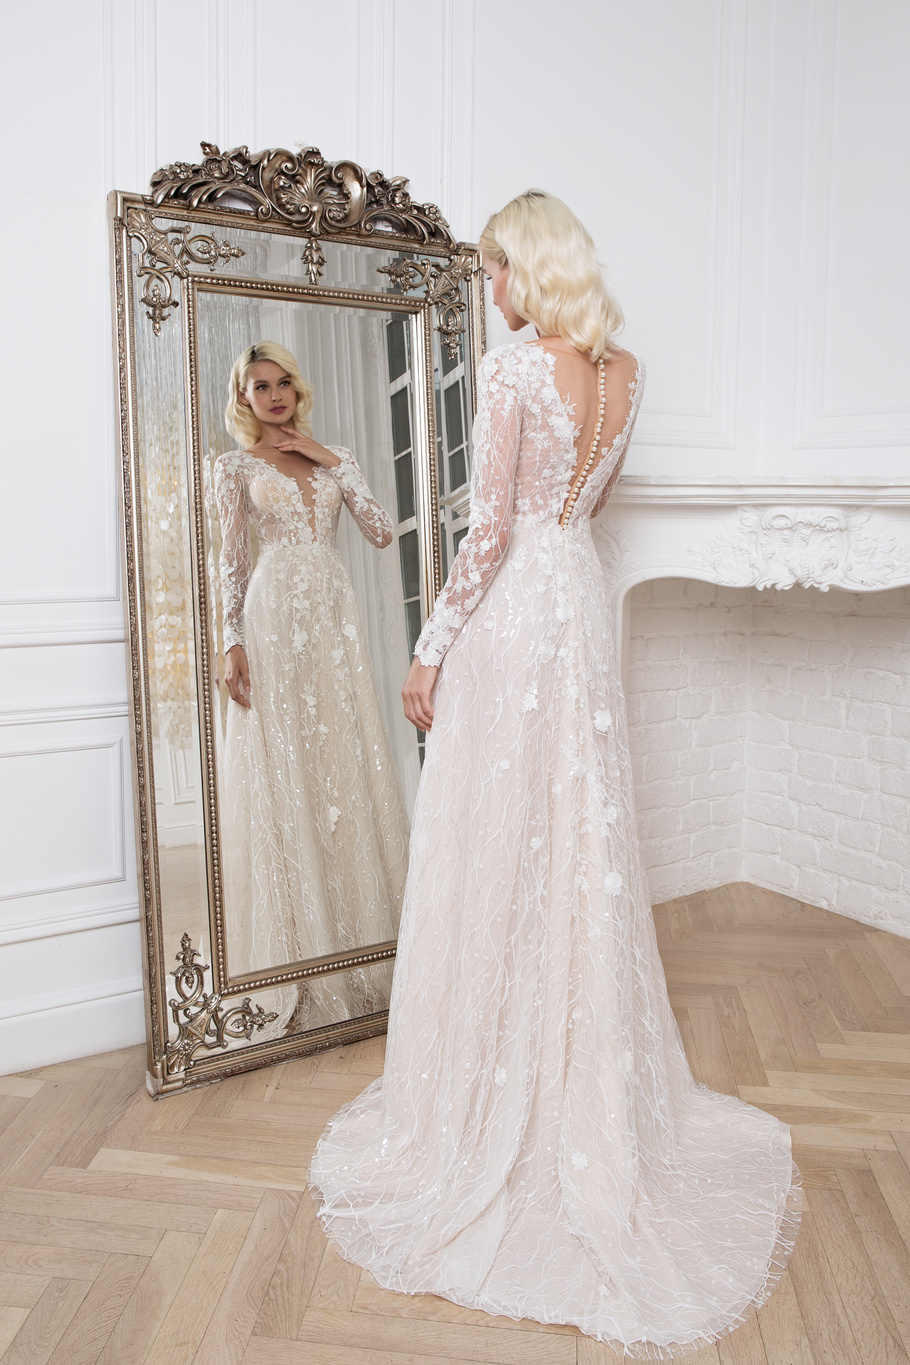 Купить свадебное платье «Альмерия» Мэрри Марк из коллекции 2020 года в Воронеже